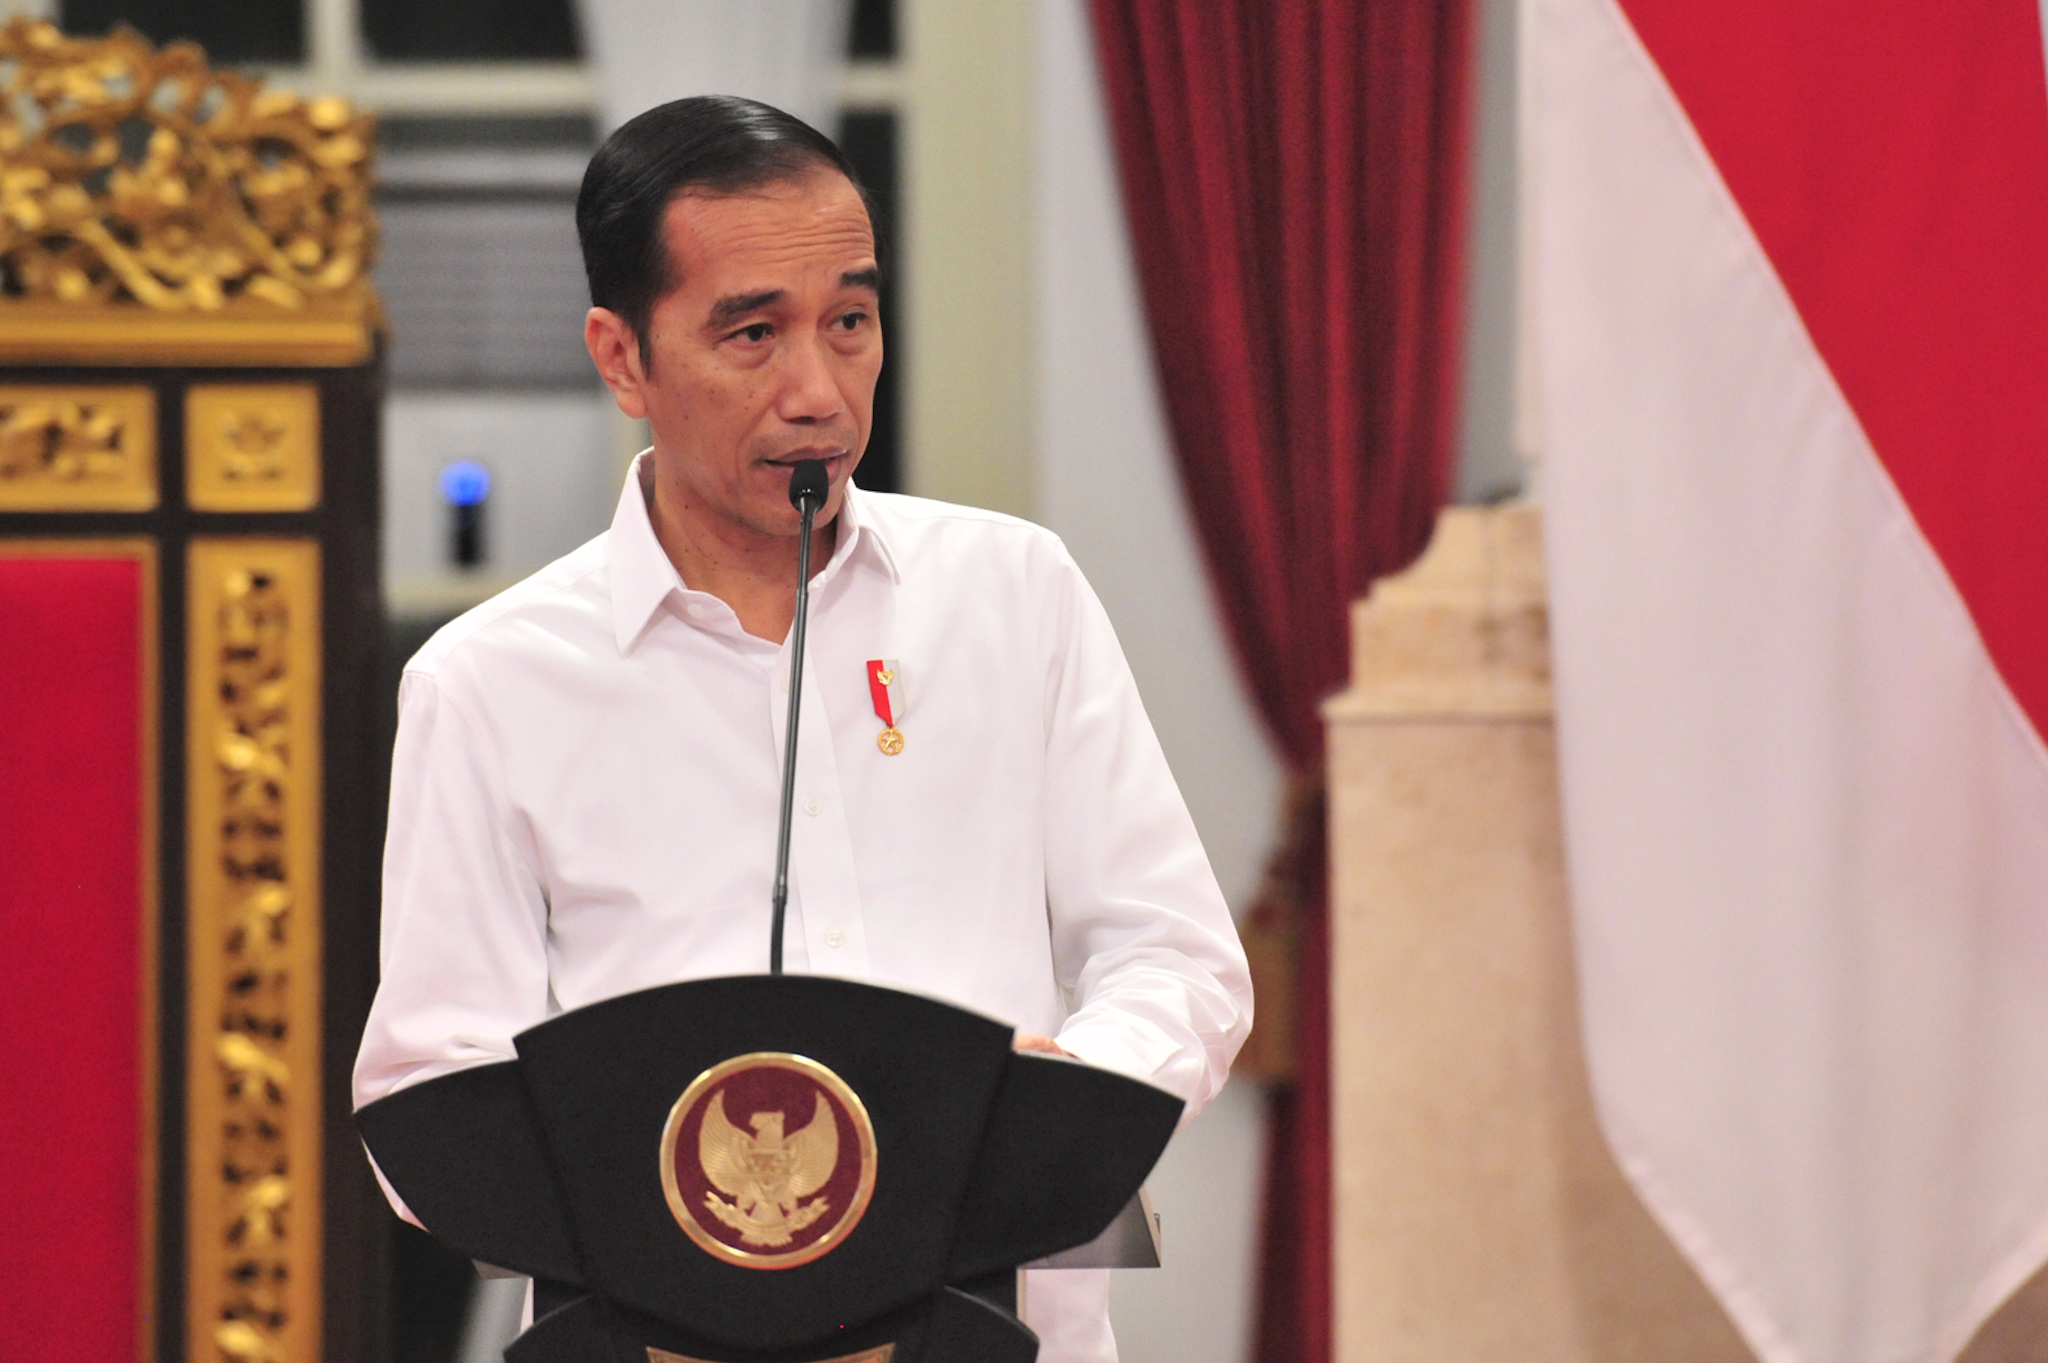 Di Depan 34 Gubernur, Jokowi Sampaikan Pesan Khusus Terkait Covid-19